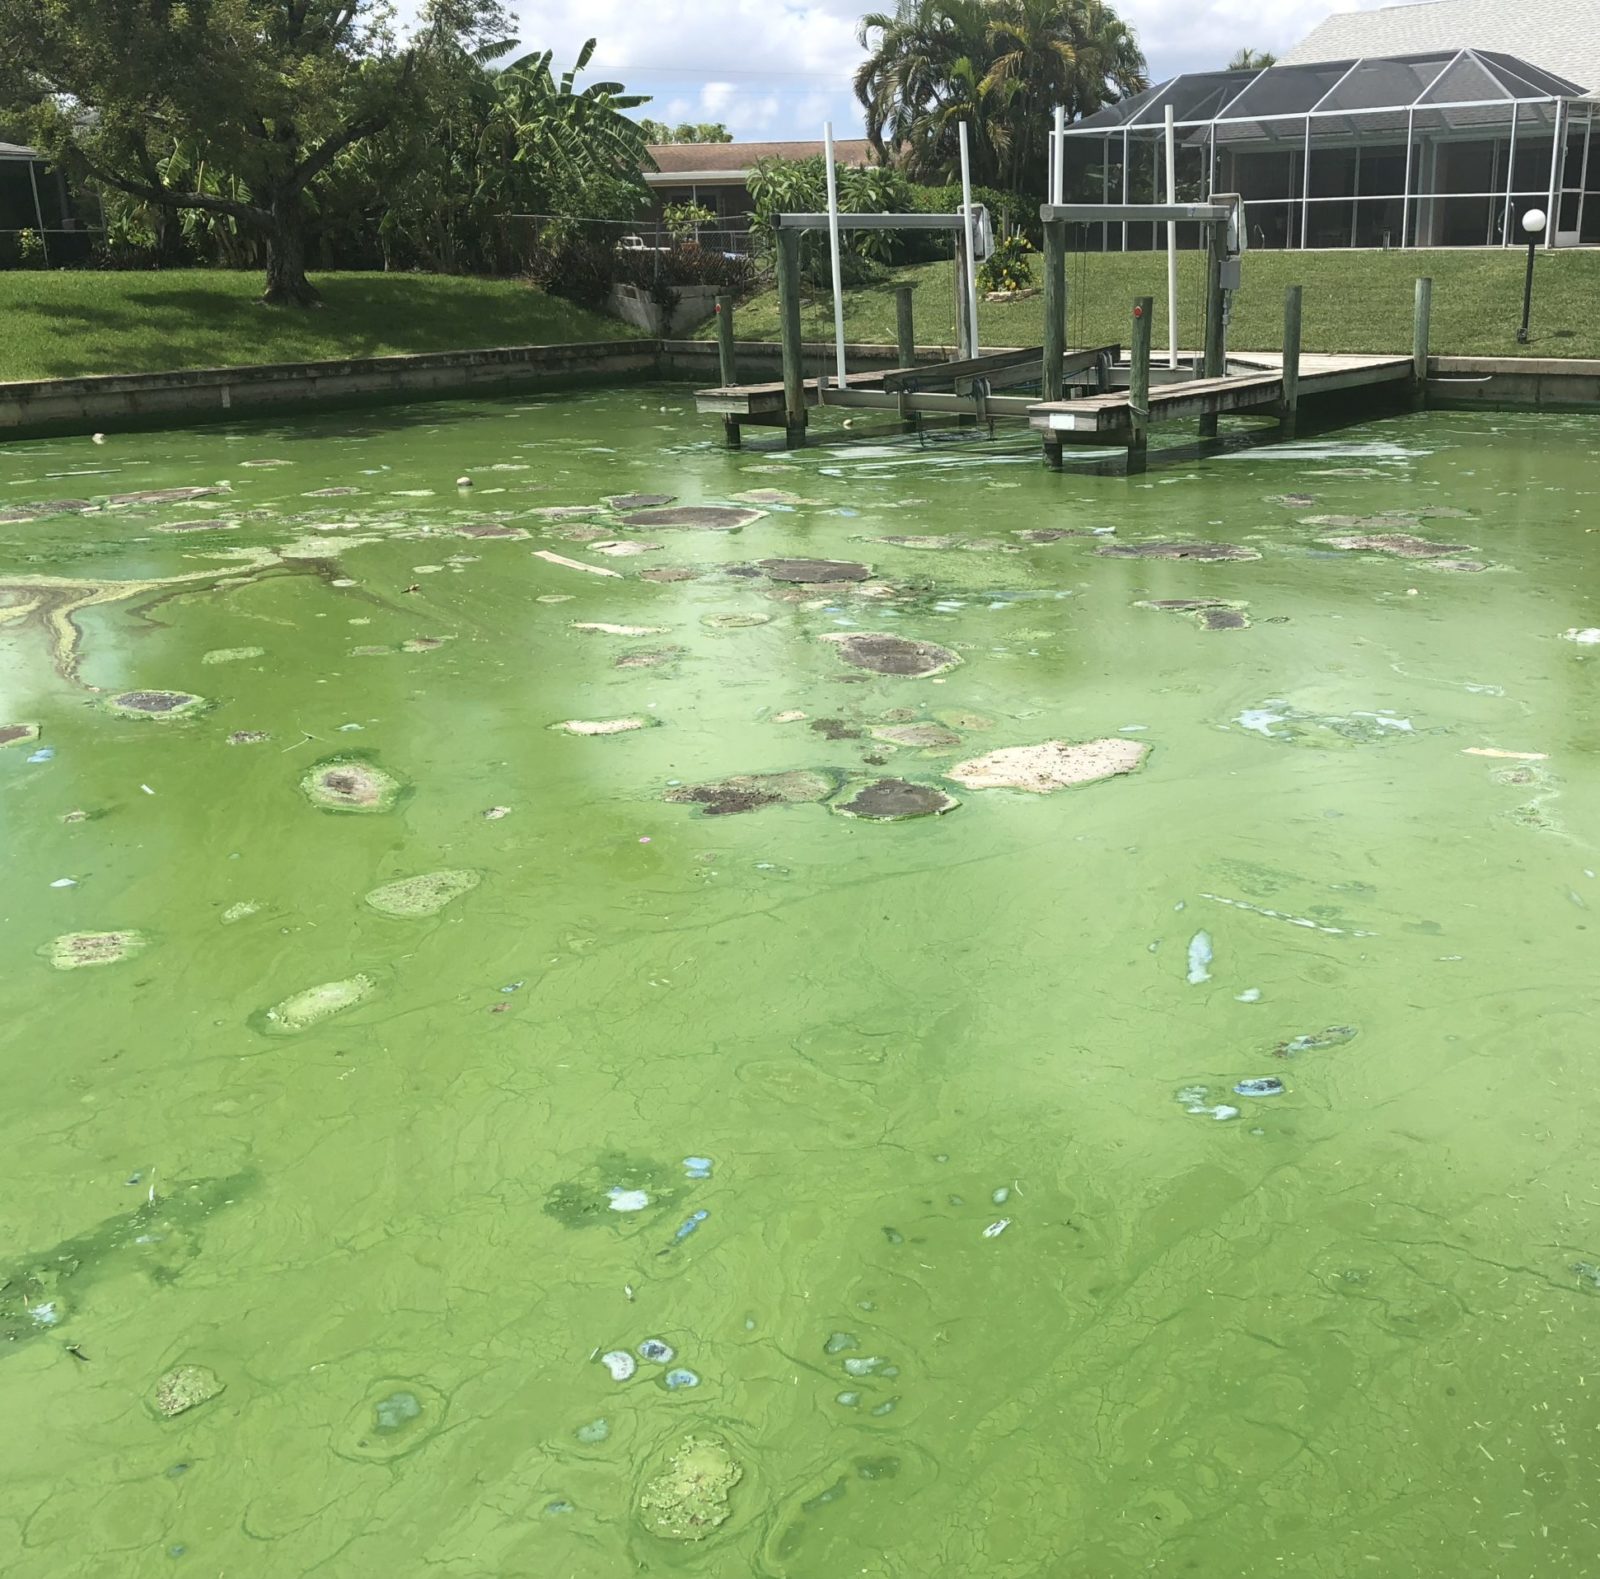 harmful algae bloom